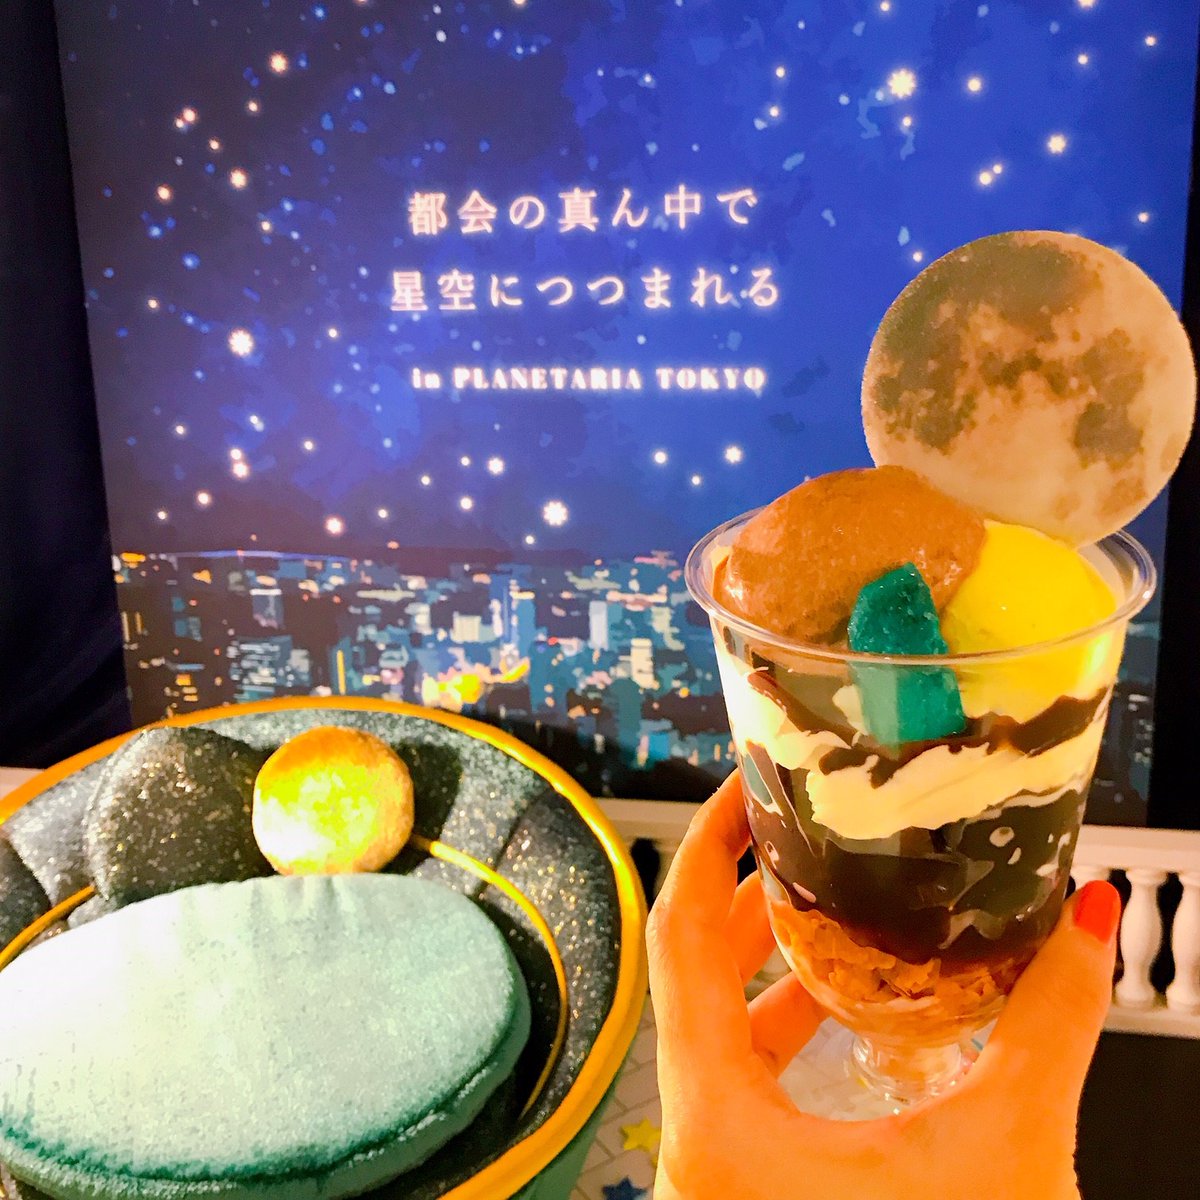 コニカミノルタプラネタリア Tokyo Twitterissa 7月1日 Cafe Planetaria のメニューが新しくなりました Parfait Moon は 自慢のコーヒーゼリーがポイント 満月と甘い惑星をのせた大人のためのパフェをぜひご賞味ください T Co Zibjmyqyvv